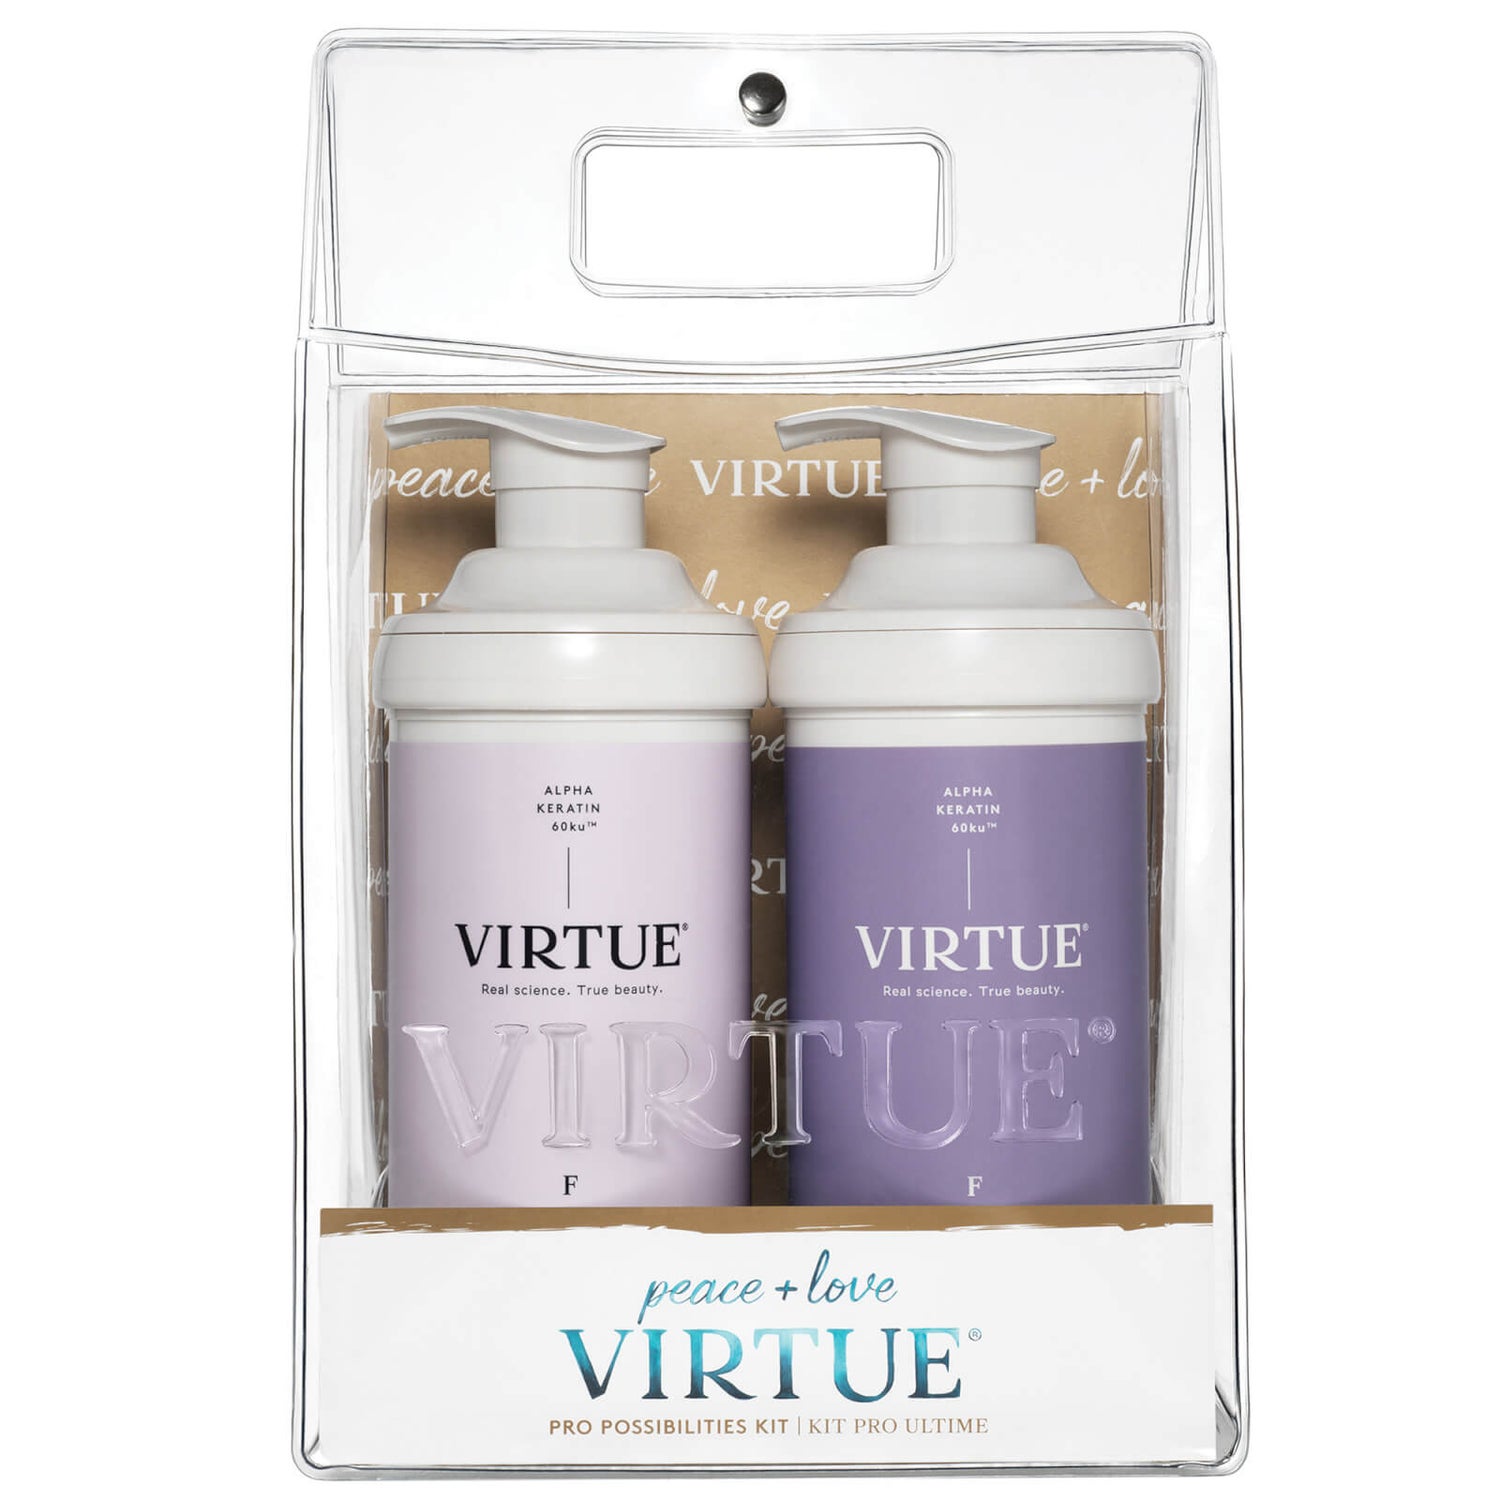 VIRTUE Pro Possibilities Kit: Full